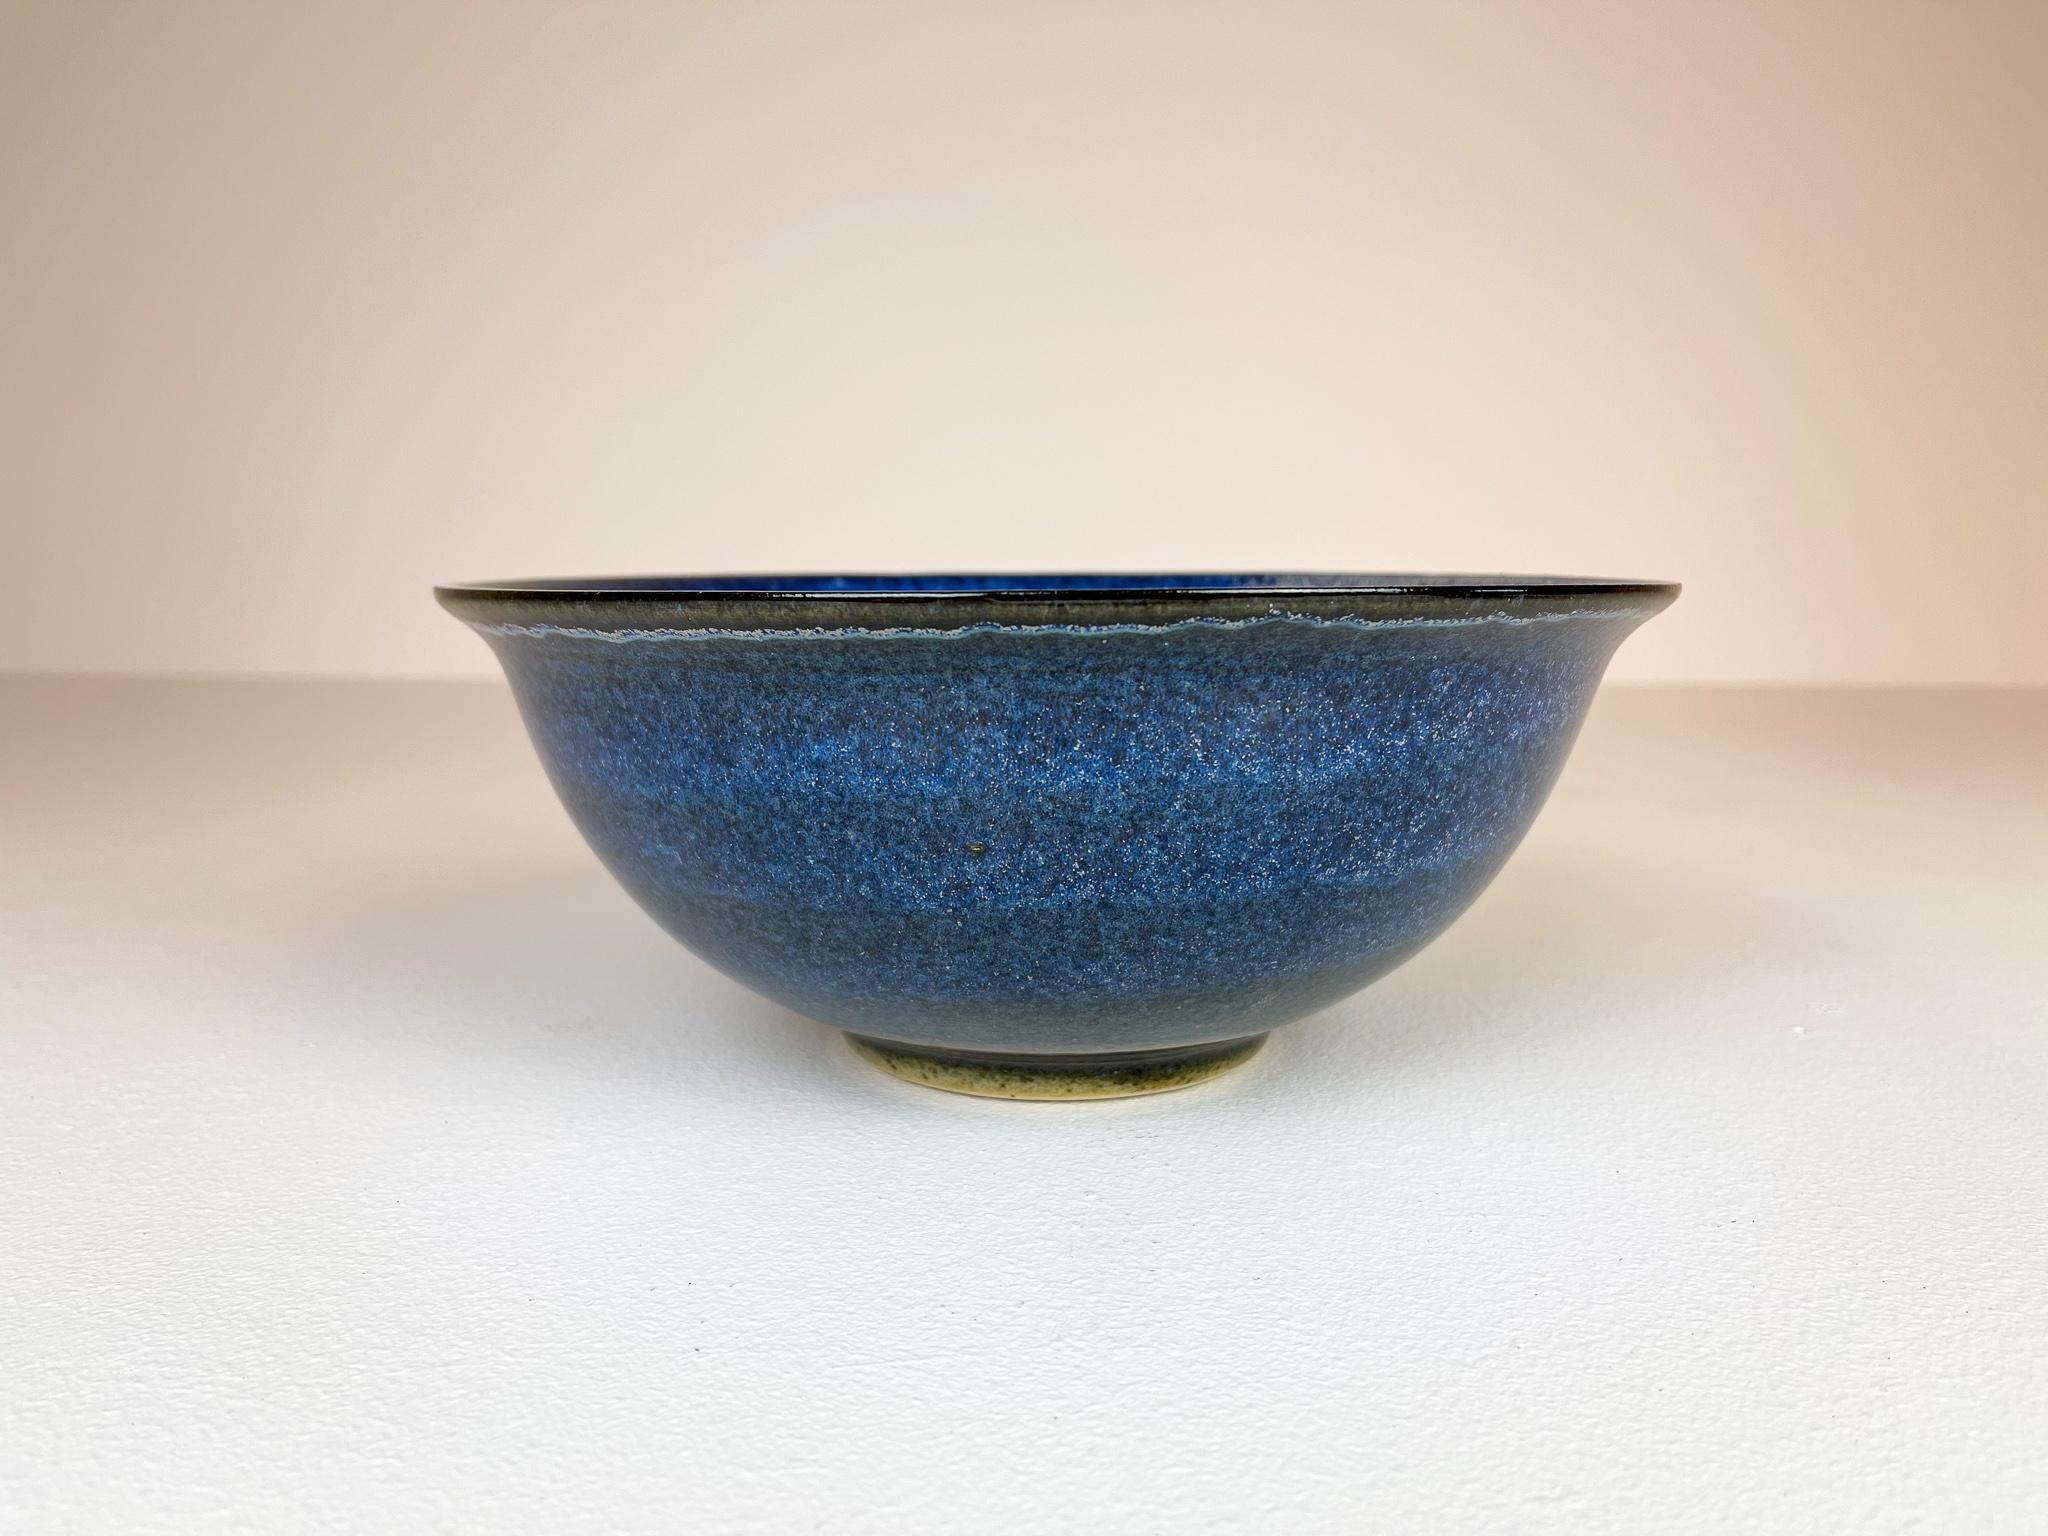 Scandinavian Modern Ceramic Bowls by Carl-Harry Stålhane Design Huset, Sweden For Sale 4